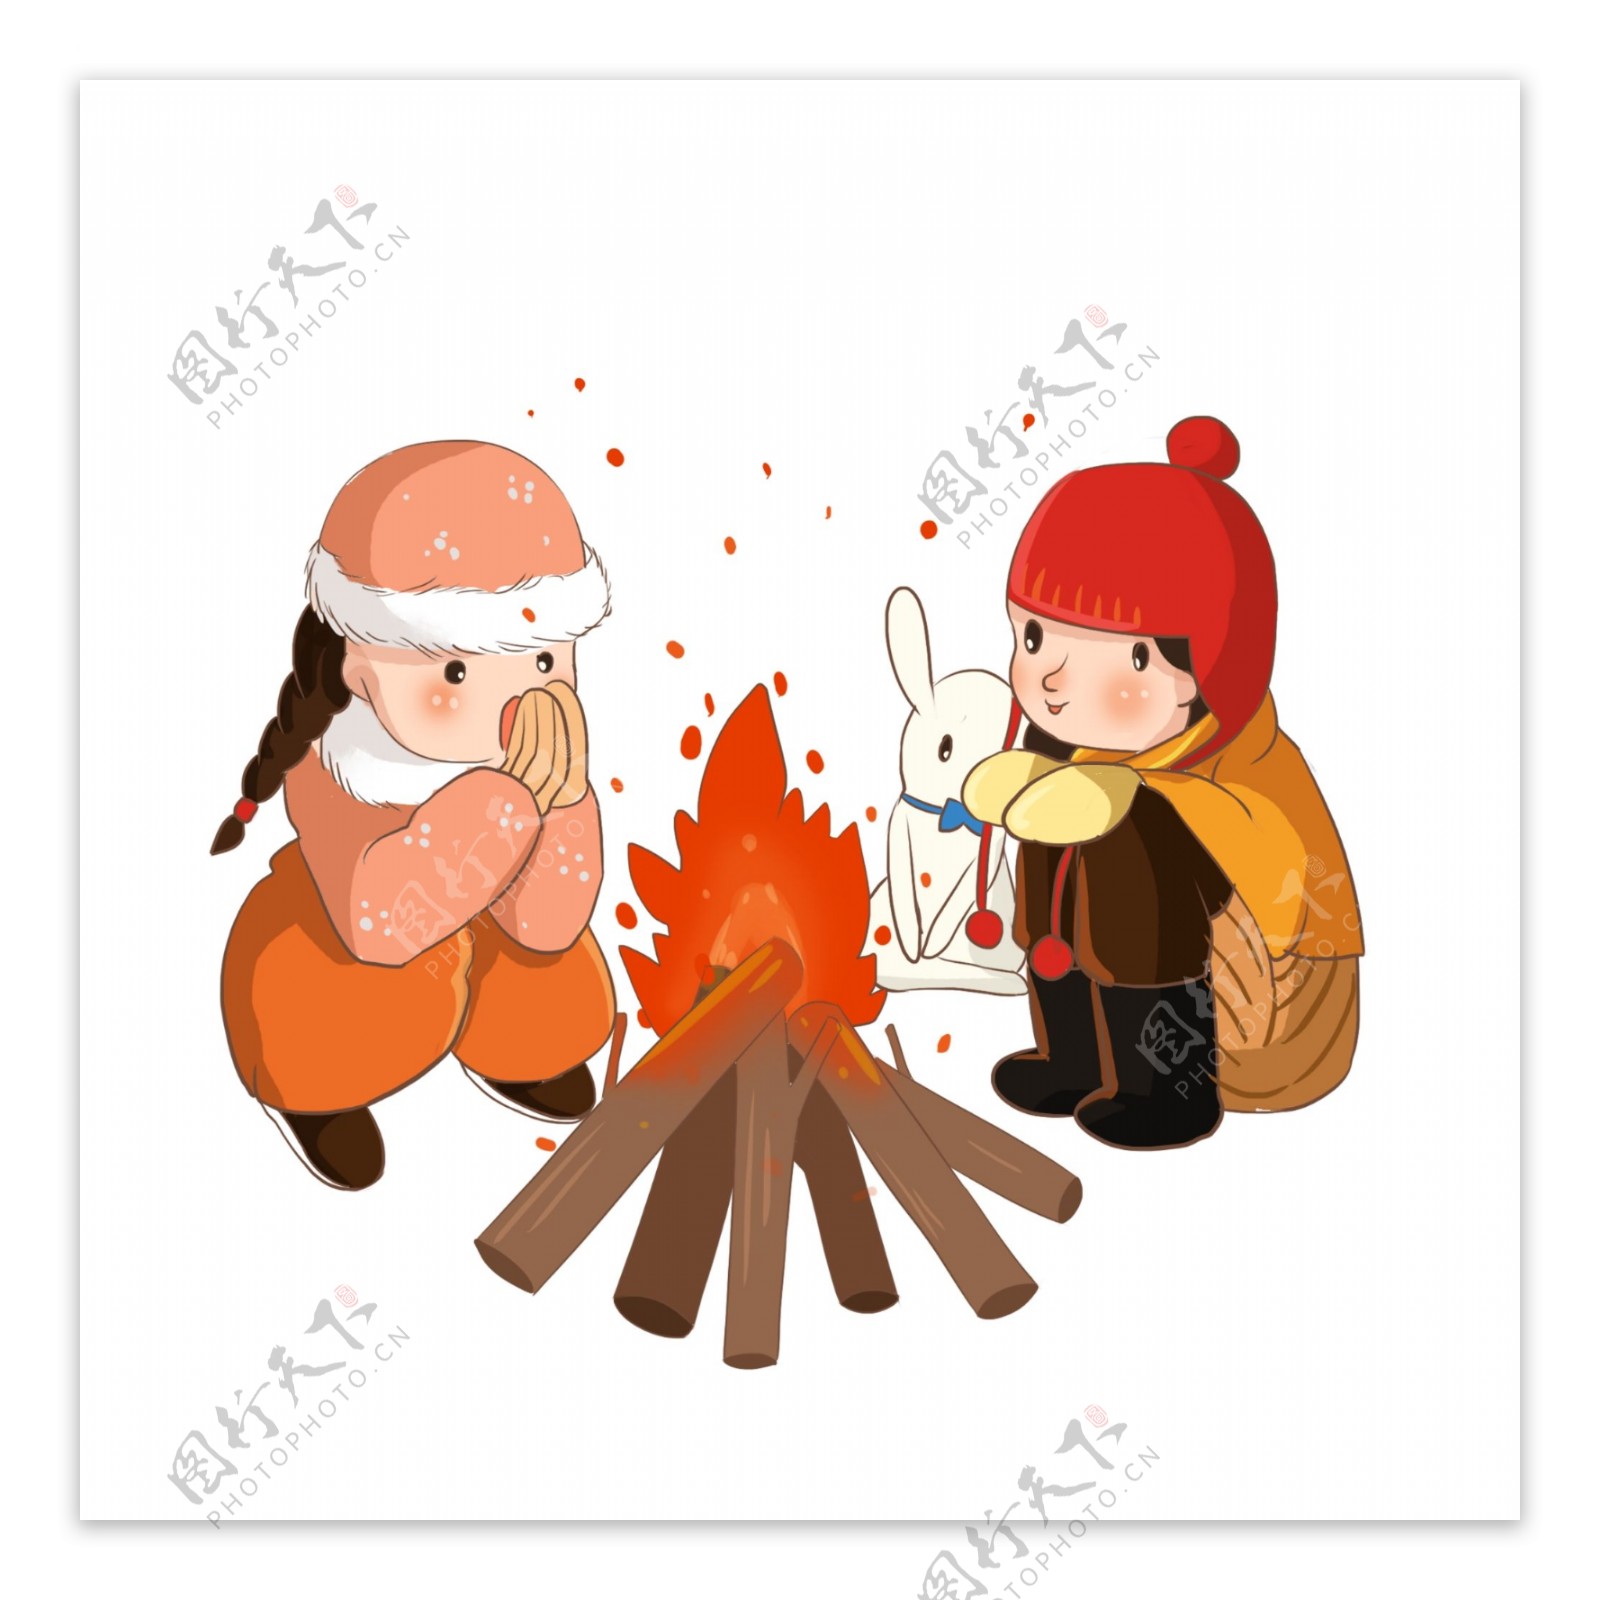 冬季用柴堆取暖的小女孩